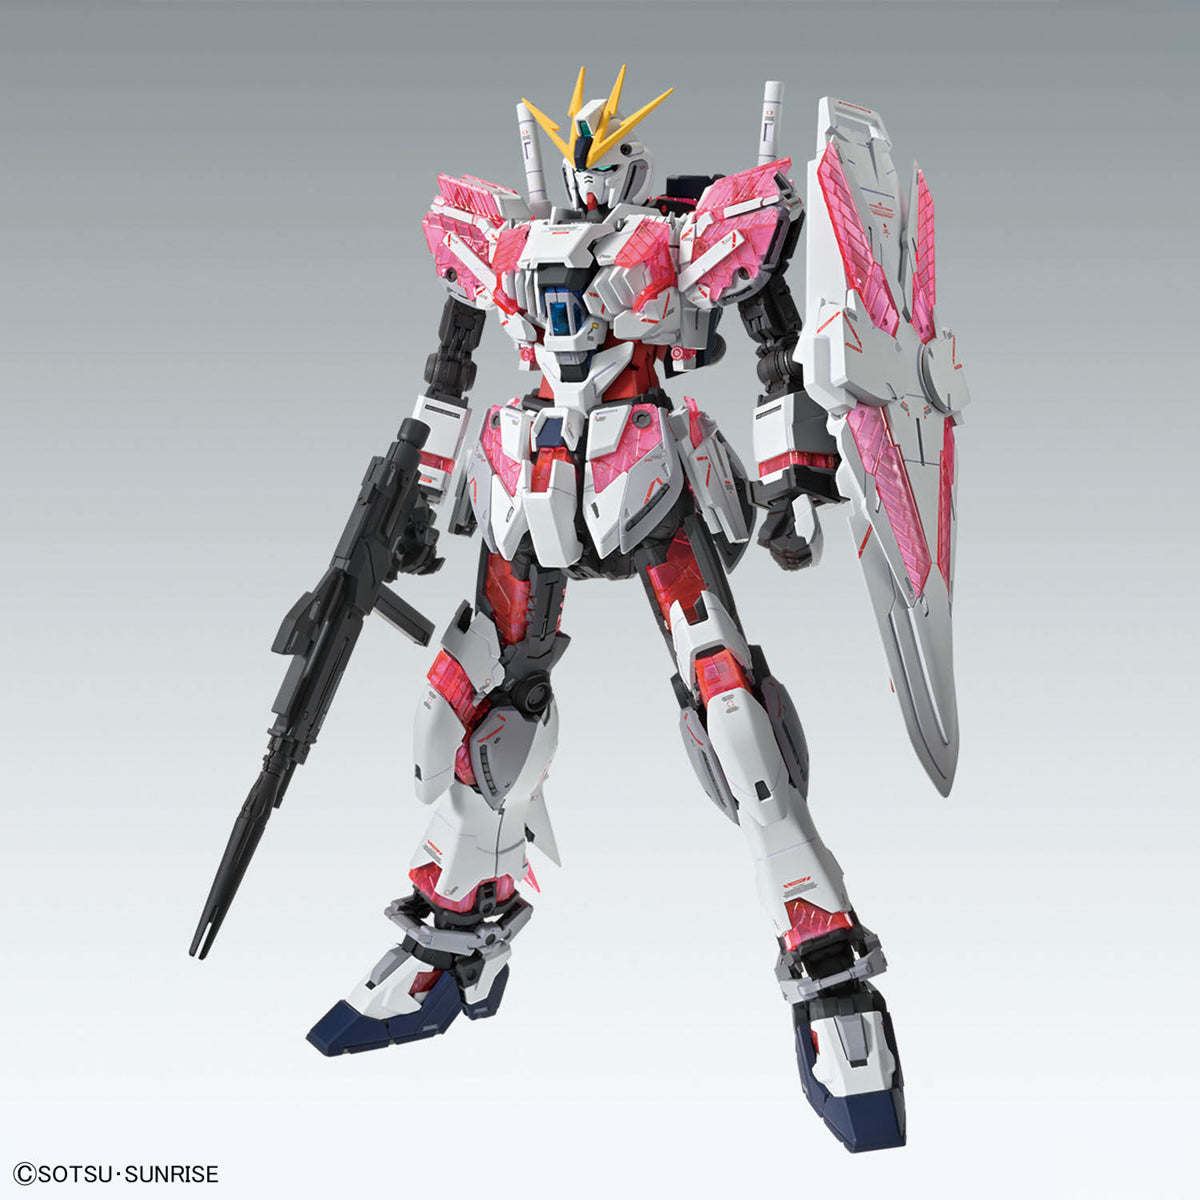 MG Narrative Gundam C-Packs Ver.Ka 1/100